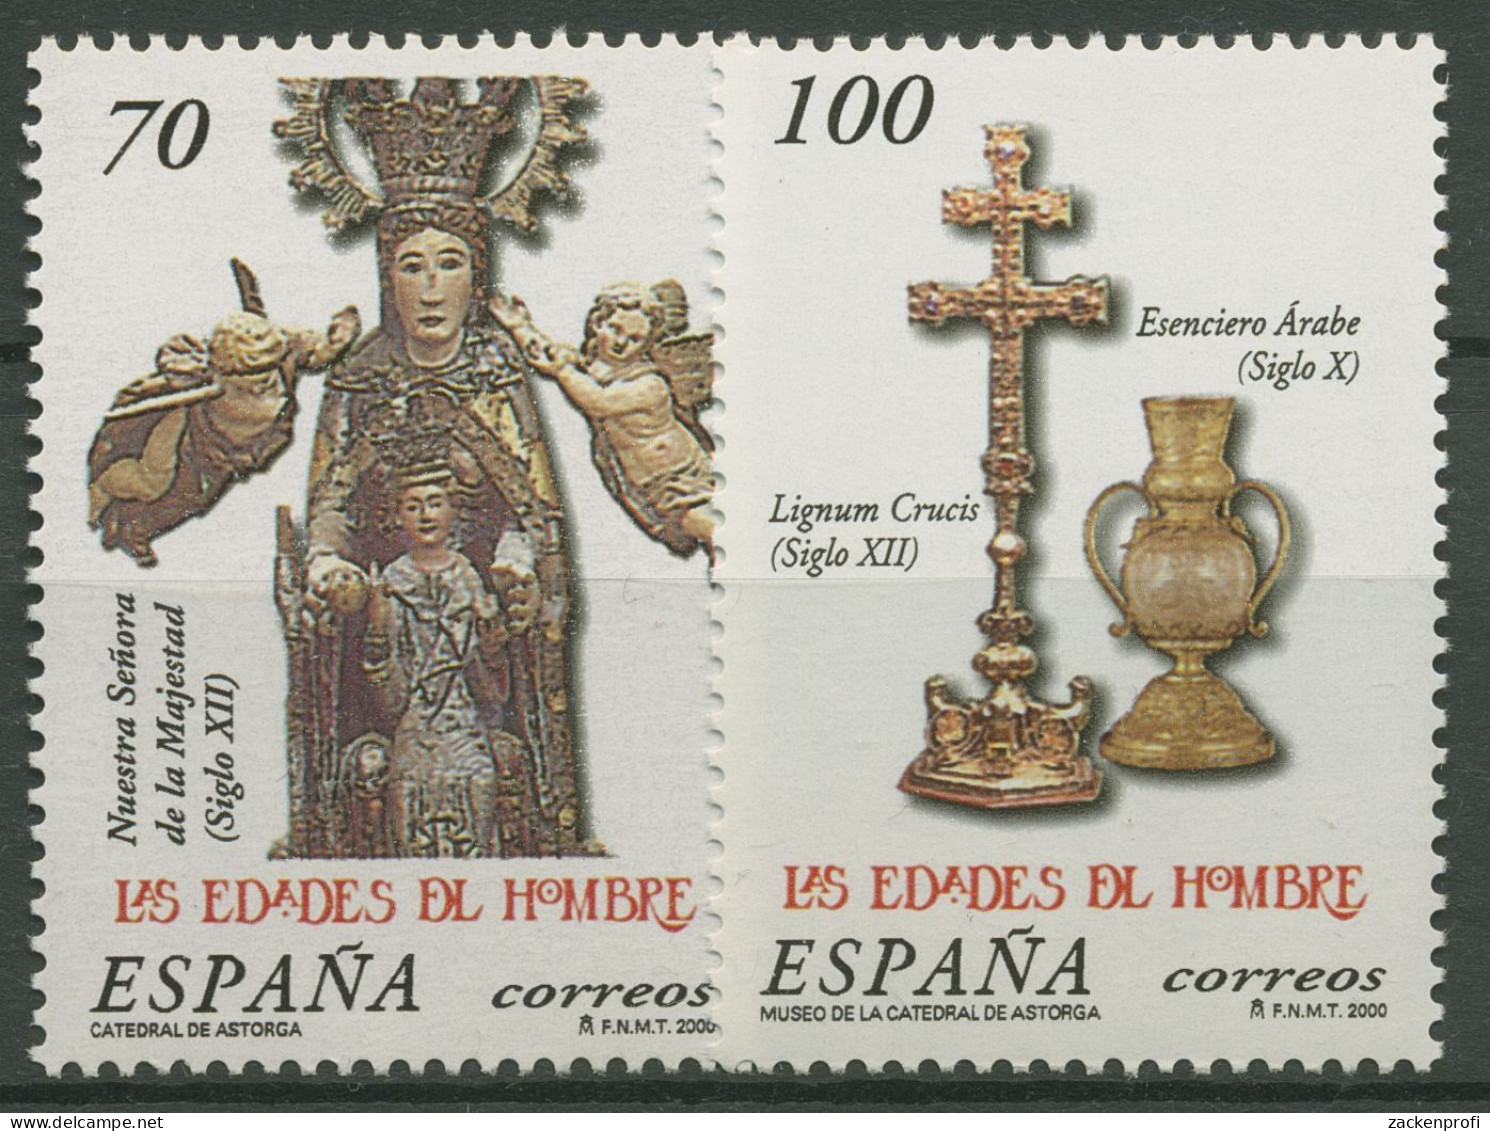 Spanien 2000 Ausstellung Zeitalter Des Menschen Statue 3533/34 Postfrisch - Ongebruikt